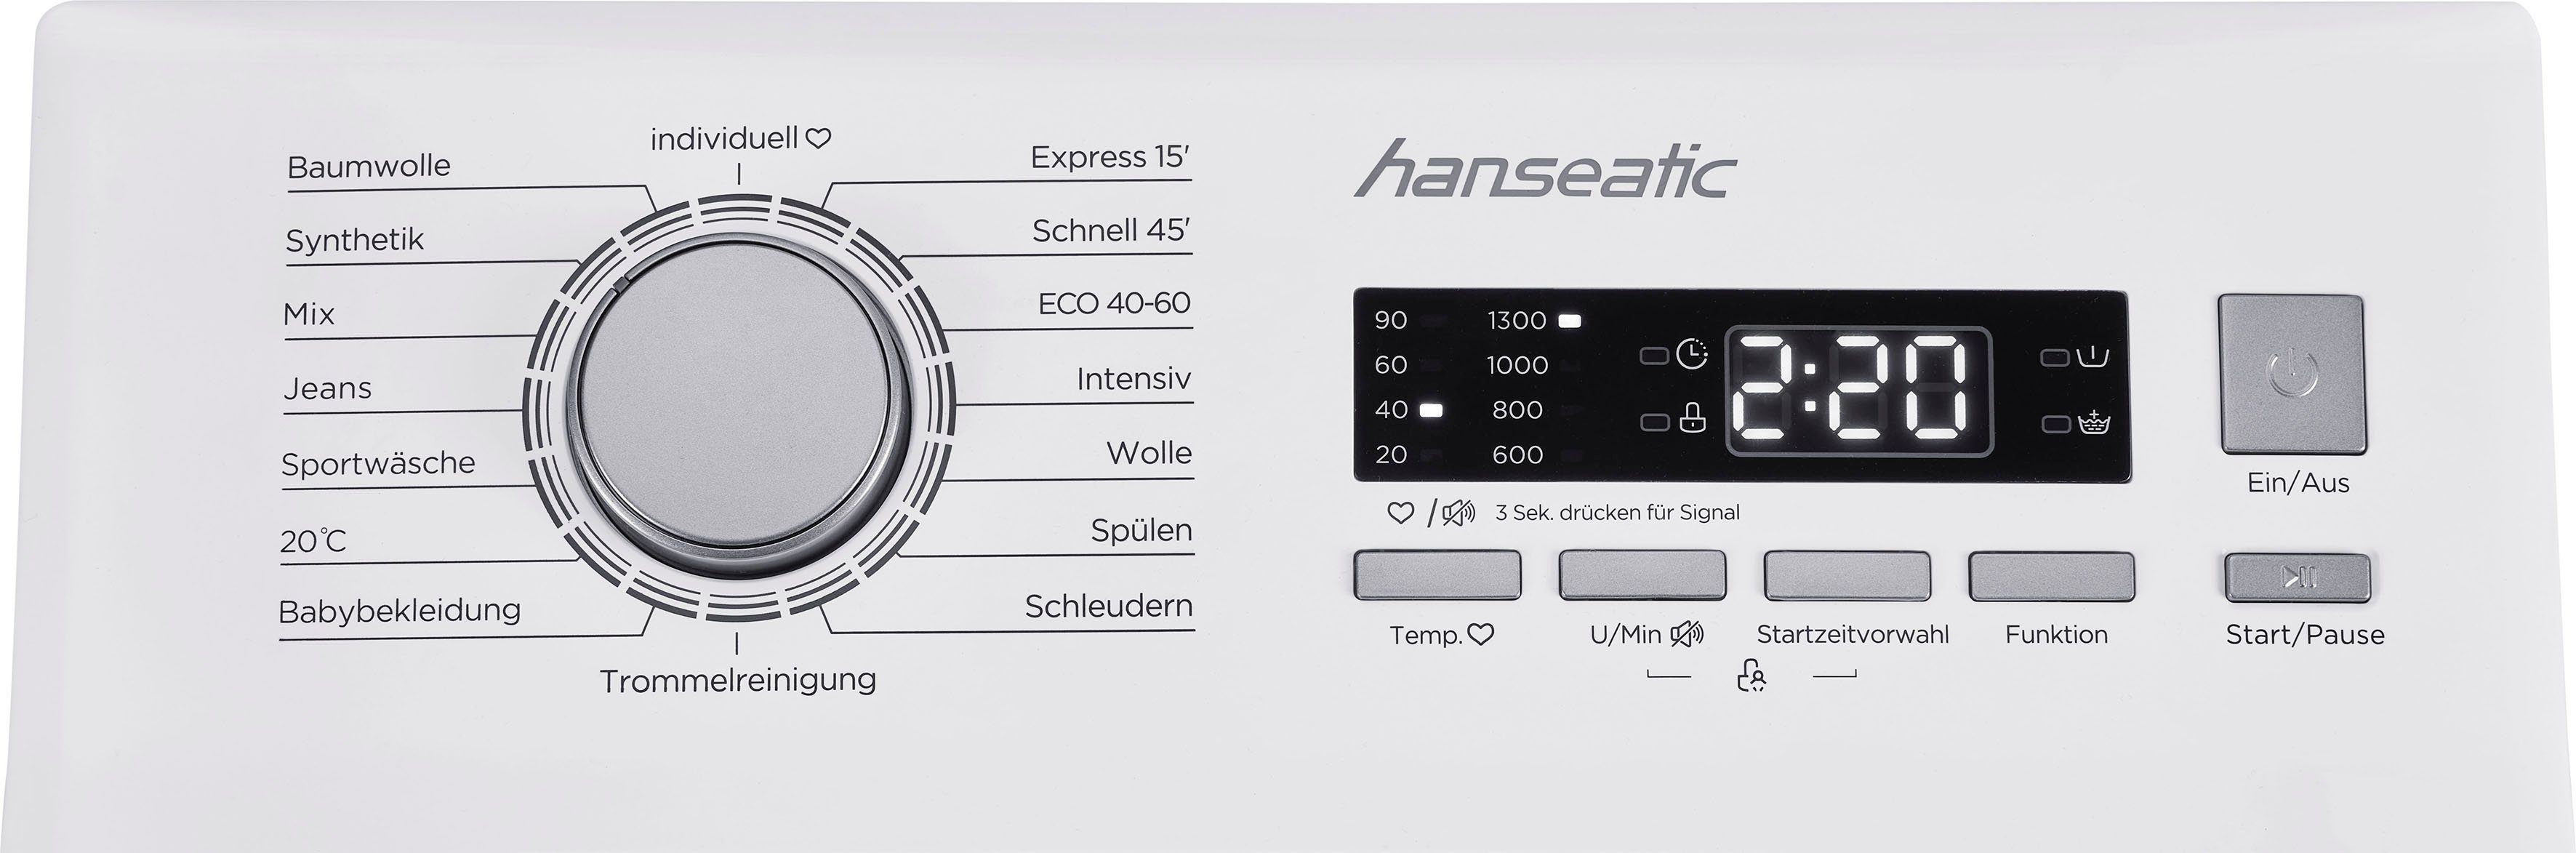 8 Hanseatic Mengenautomatik, 1300 kg, U/min, Überlaufschutzsystem Waschmaschine HTW8013C, Toplader